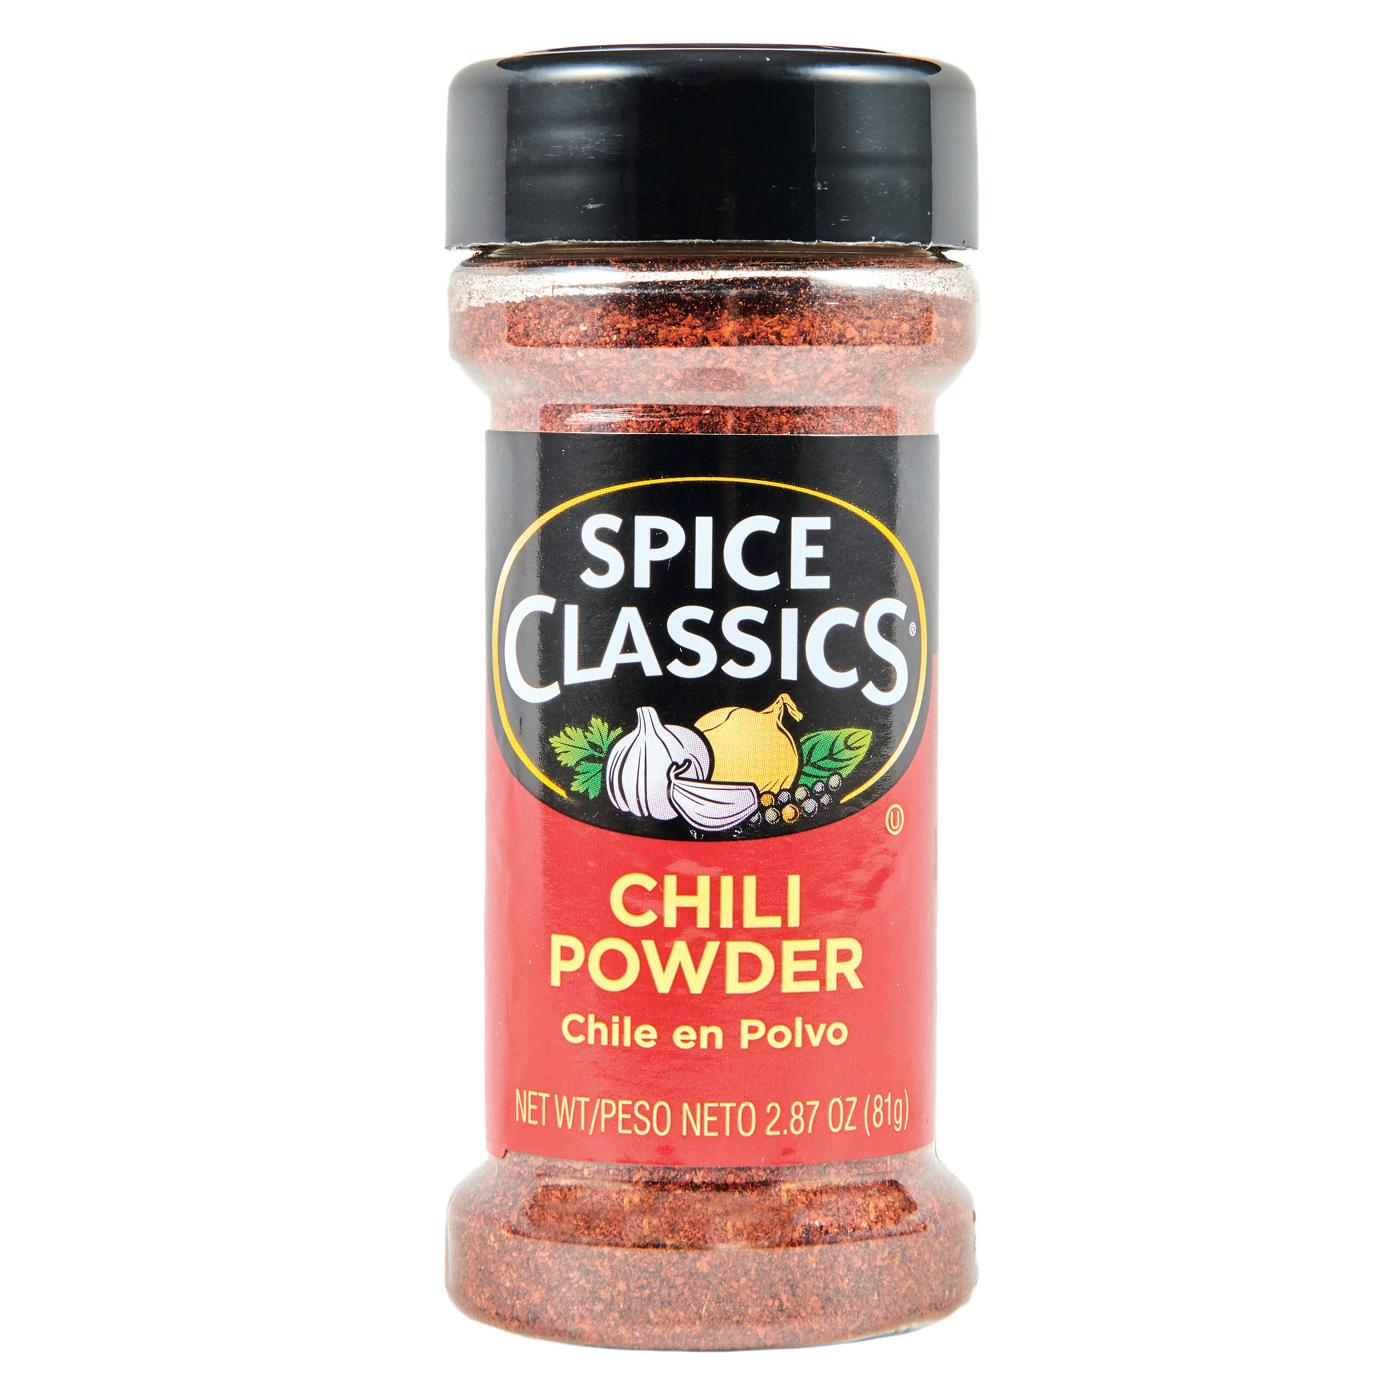 Spice Classics Chili Powder; image 1 of 2